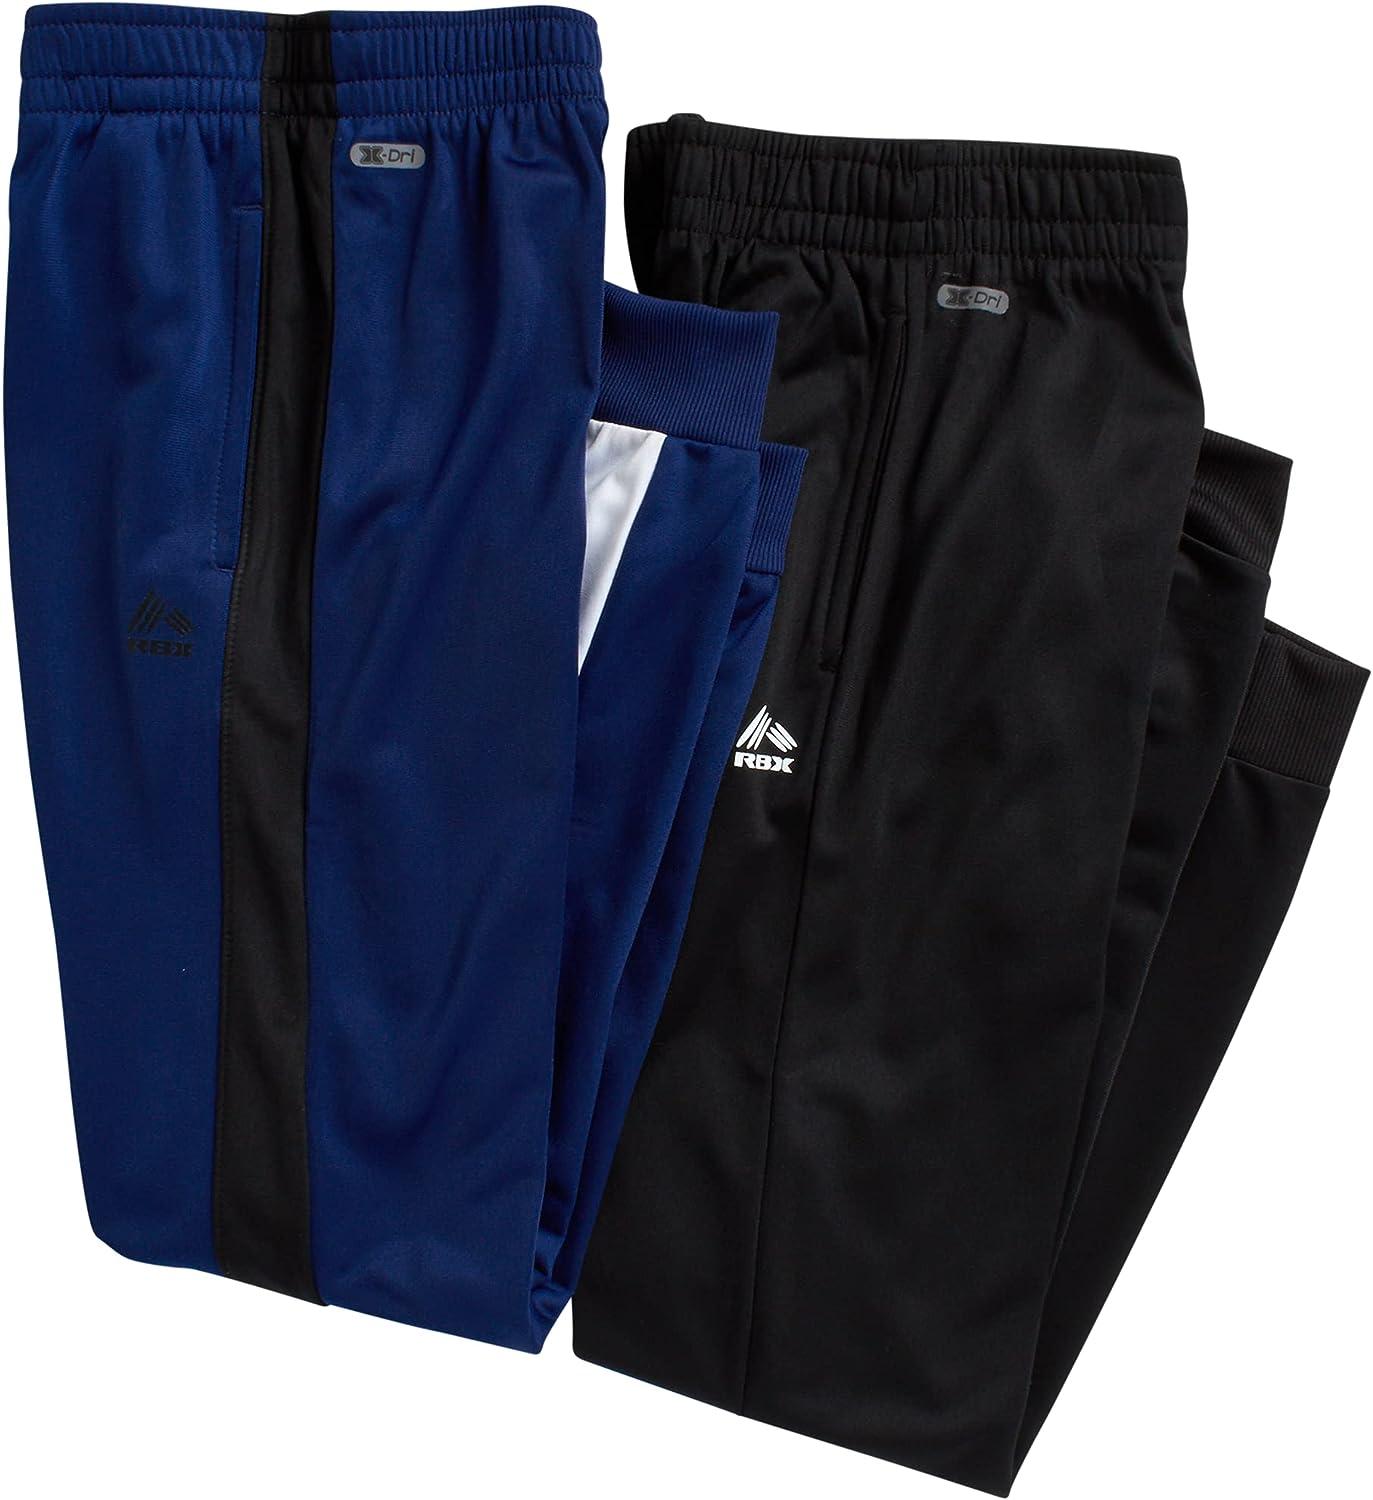 Buy RBX Boy's Sweatpants - 2 Pack Active Tricot Jogger Pants (Size: 4-20)  Online at desertcartParaguay